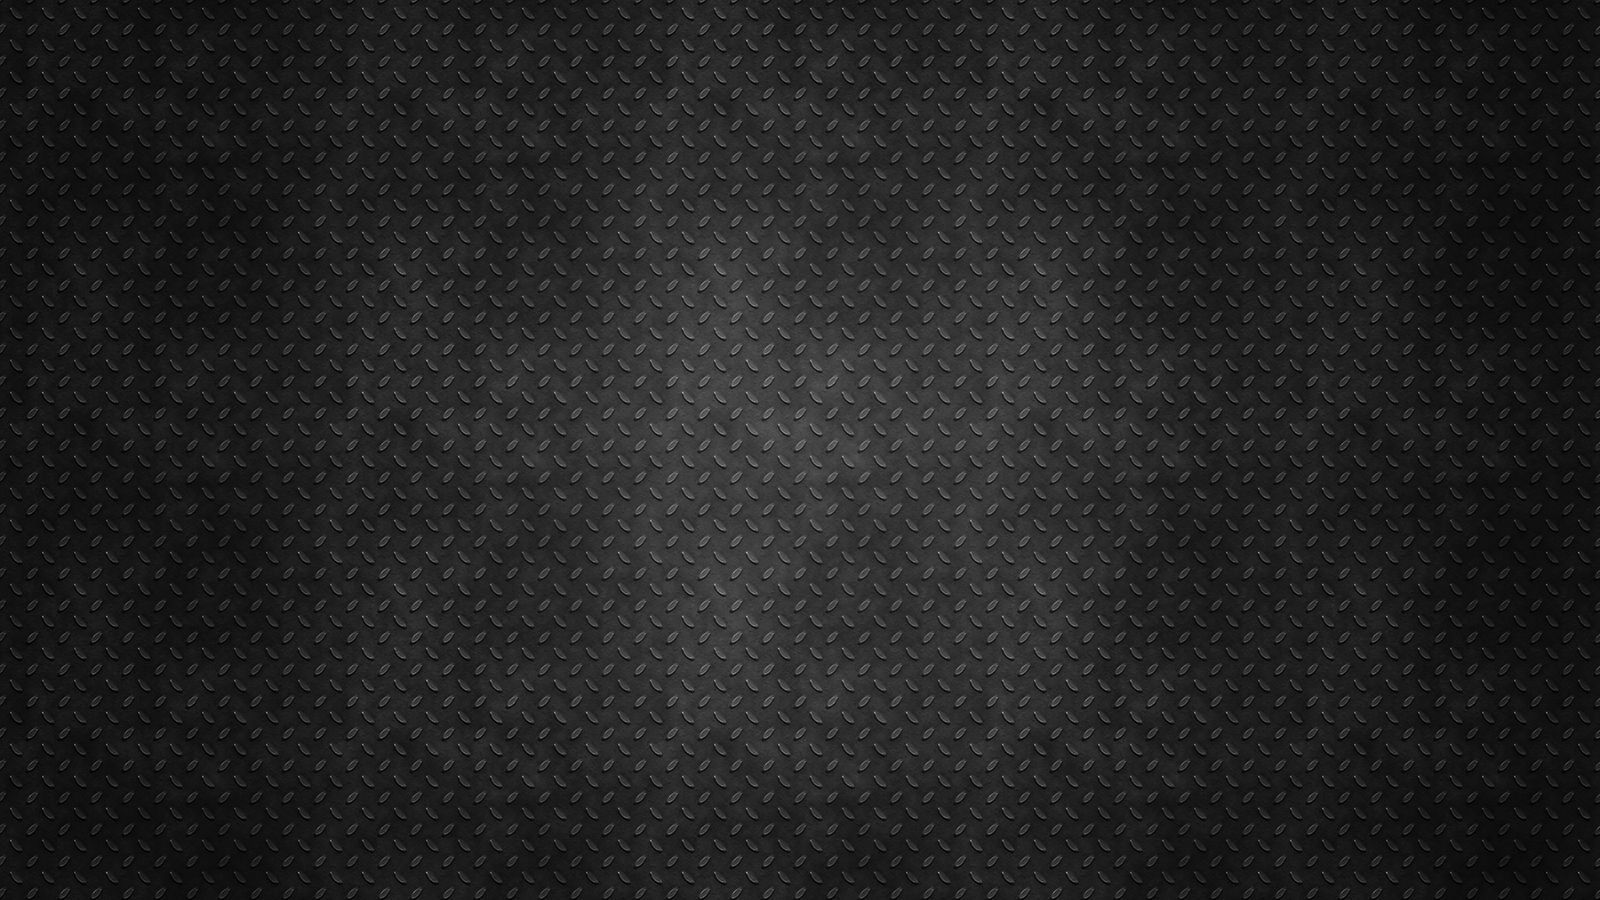 black-background-metal-texture-wallpaper-1600×900 | Nightmare ...